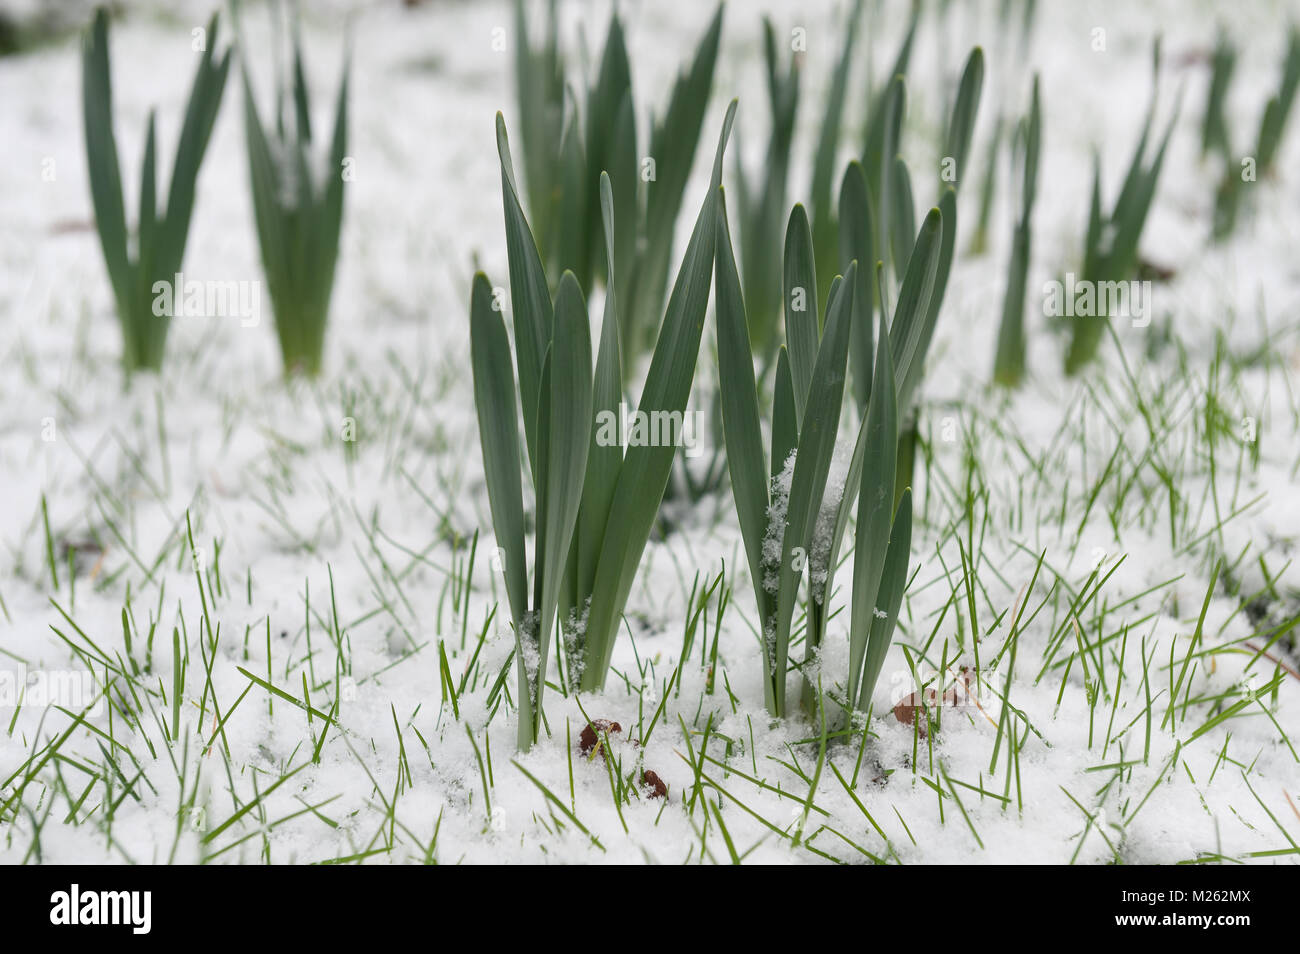 Schießen keimen Narzisse Narcissus Glühlampen mit neue grüne Blätter mit bitter kalt Schnee knallen aus Gras bedeckt Stockfoto